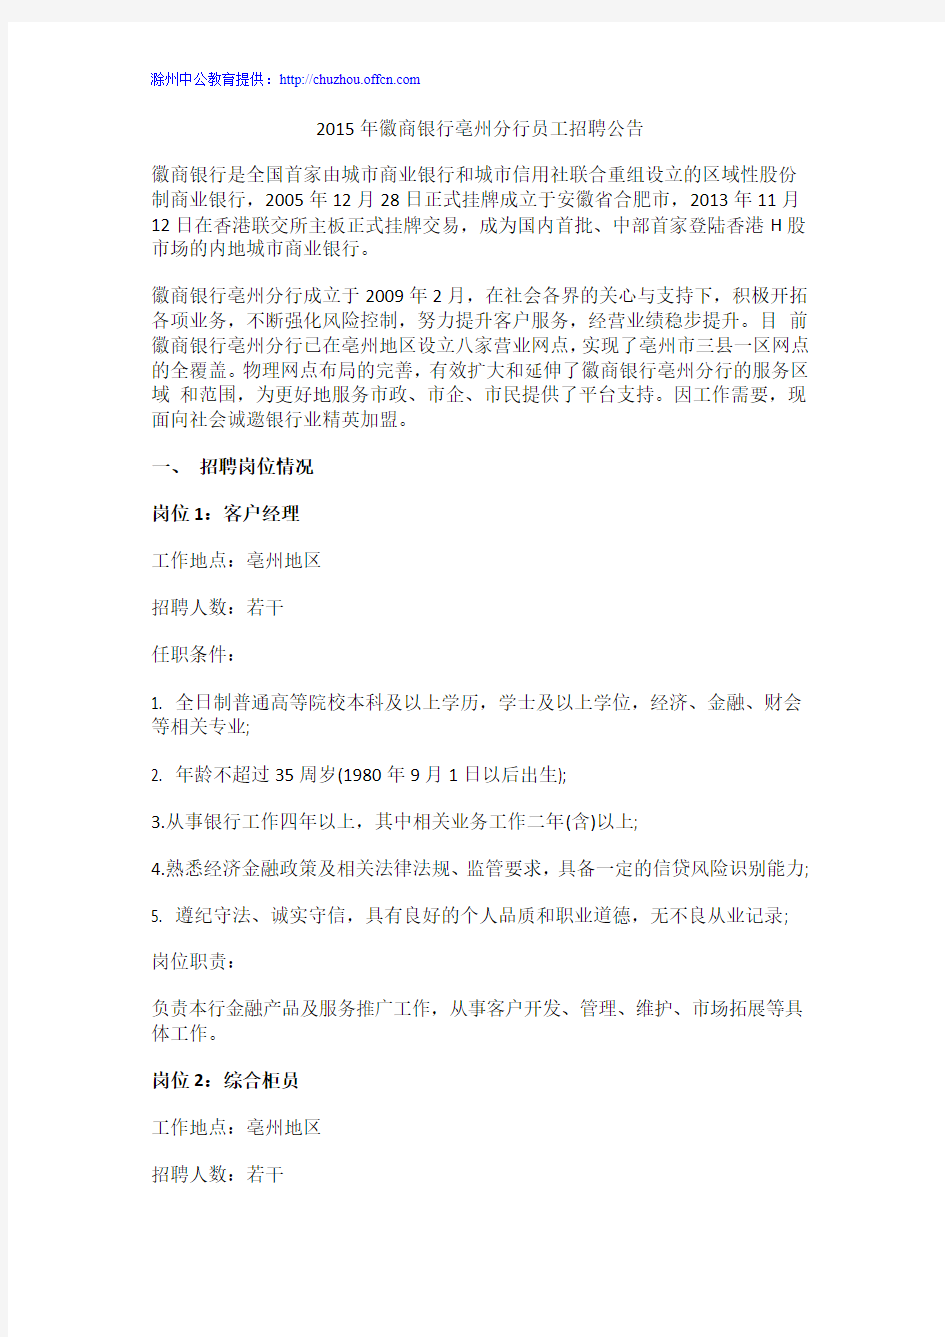 2015年徽商银行亳州分行员工招聘公告